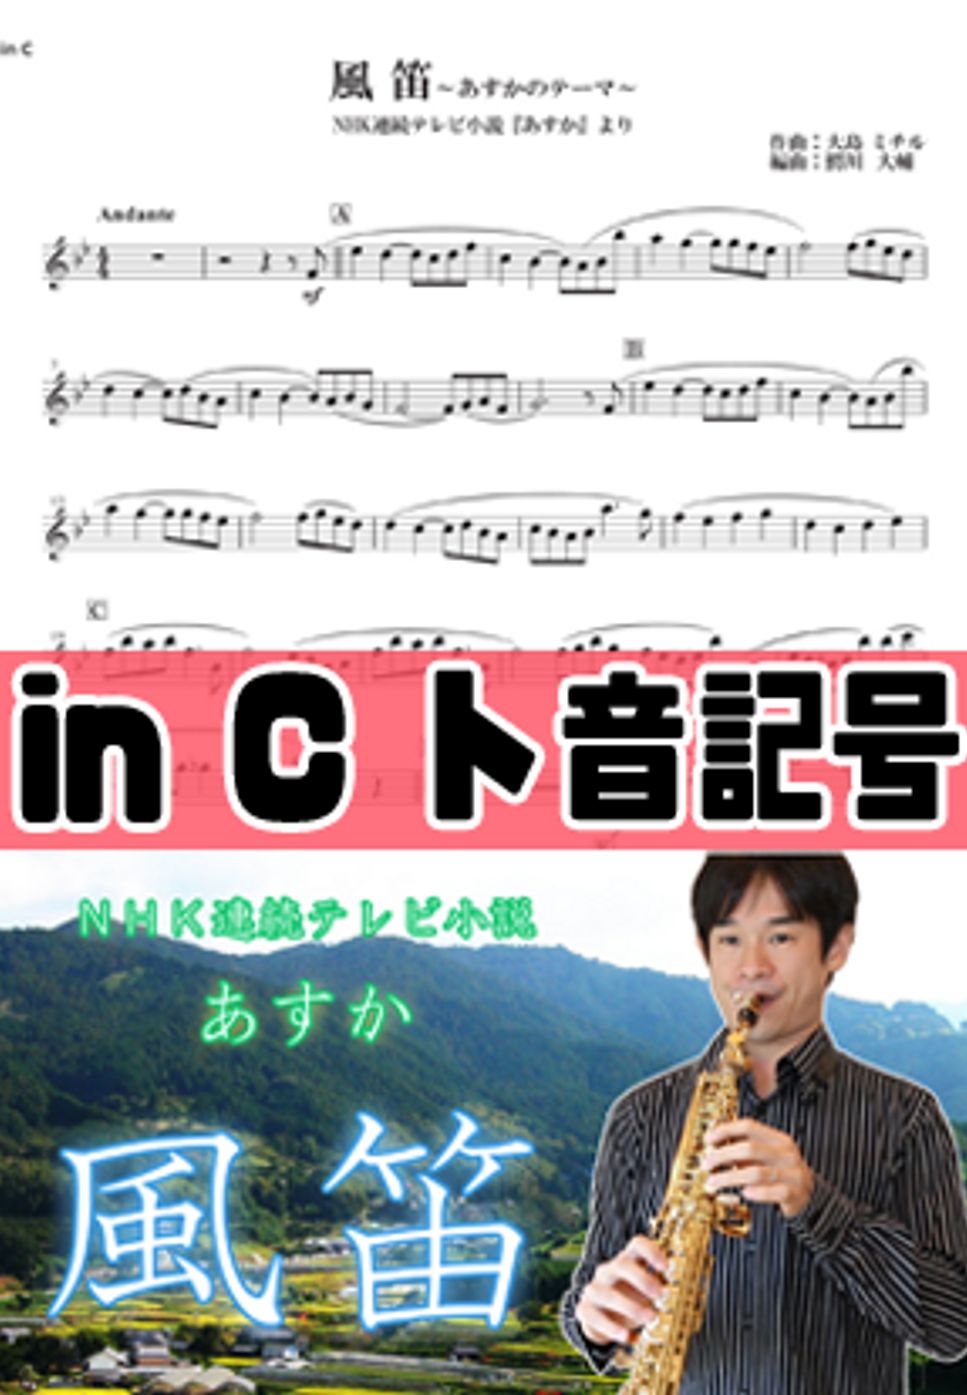 大島ミチル - 風笛 (inC用楽譜) by 鰐川大輔